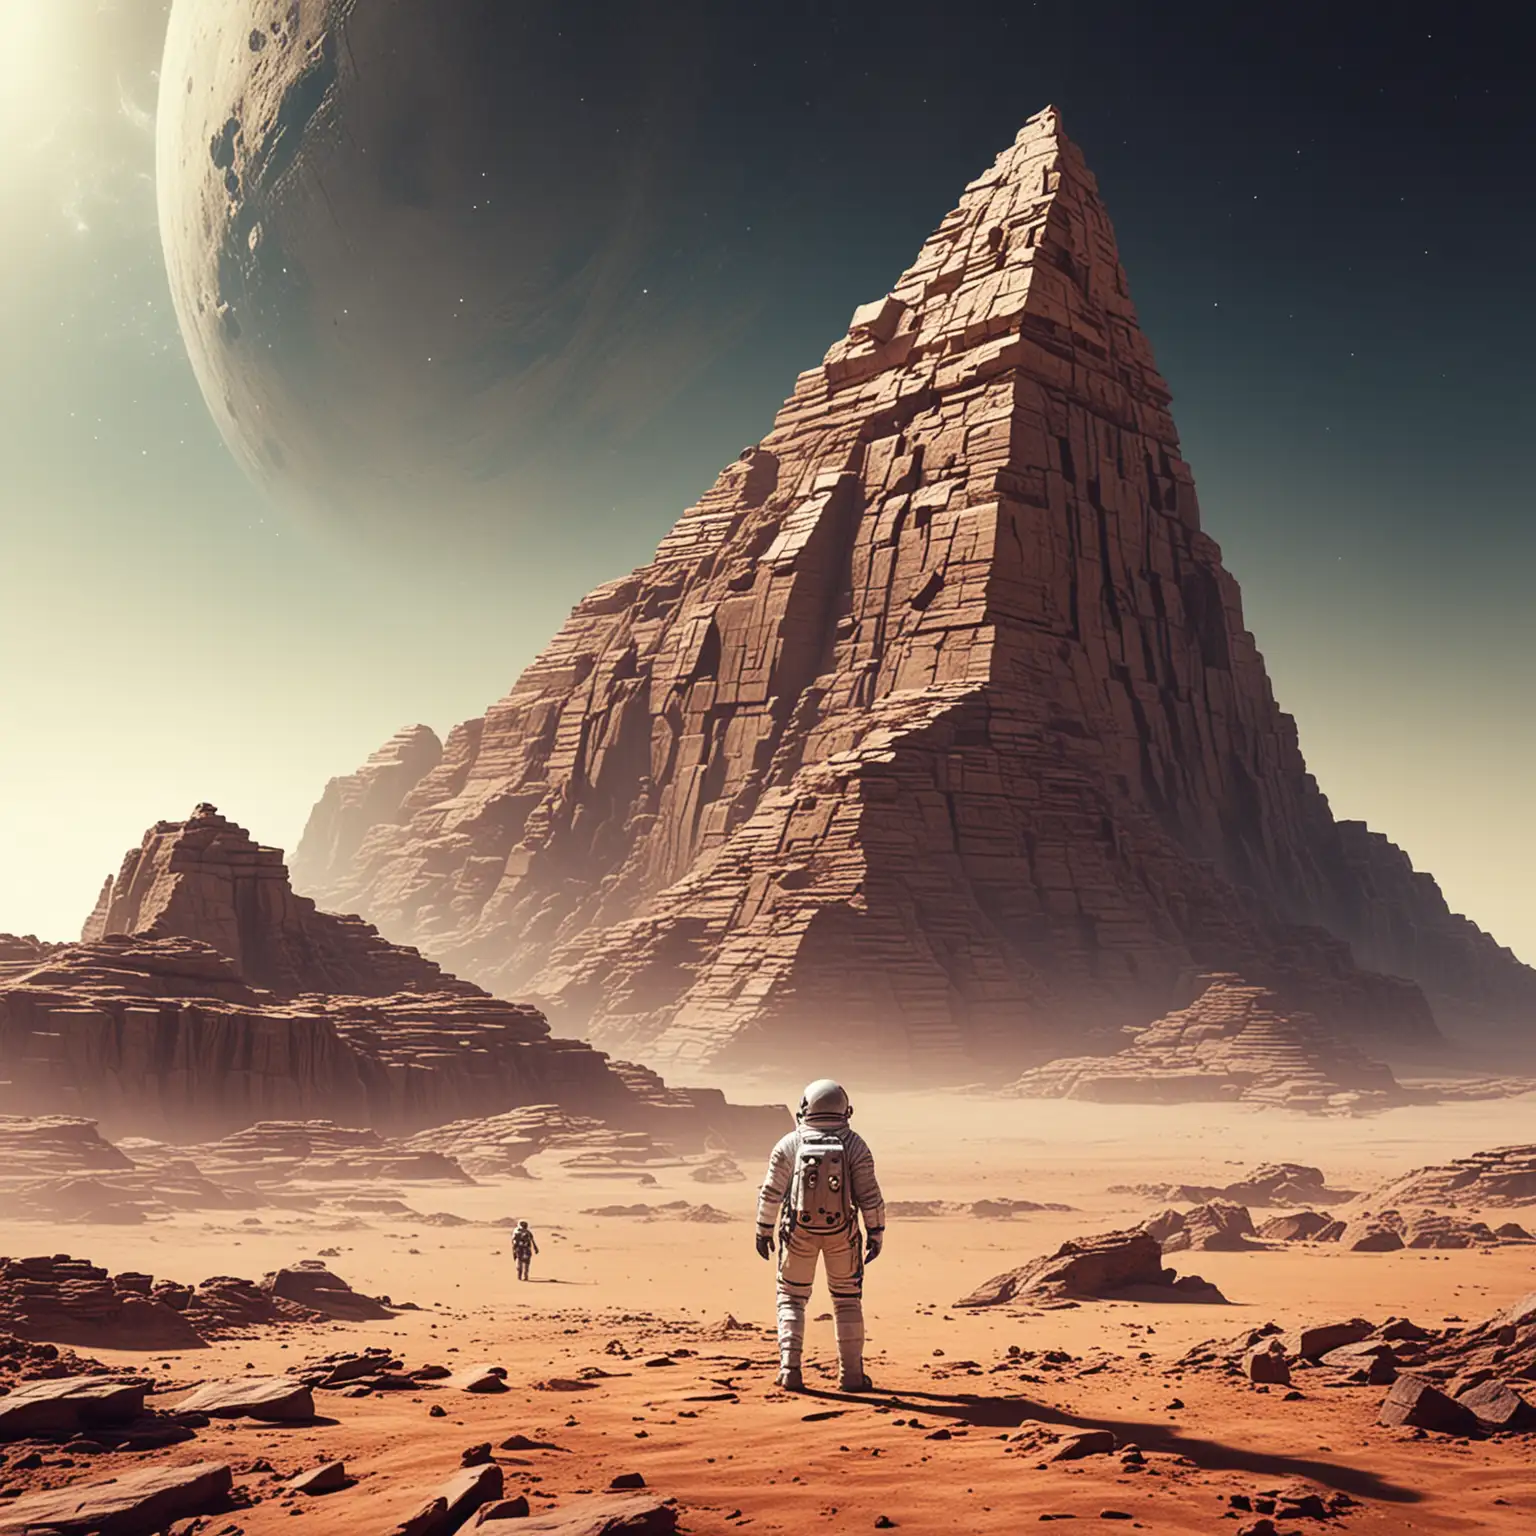 Astronaut Exploring Desert Planet with Ancient Ziggurat